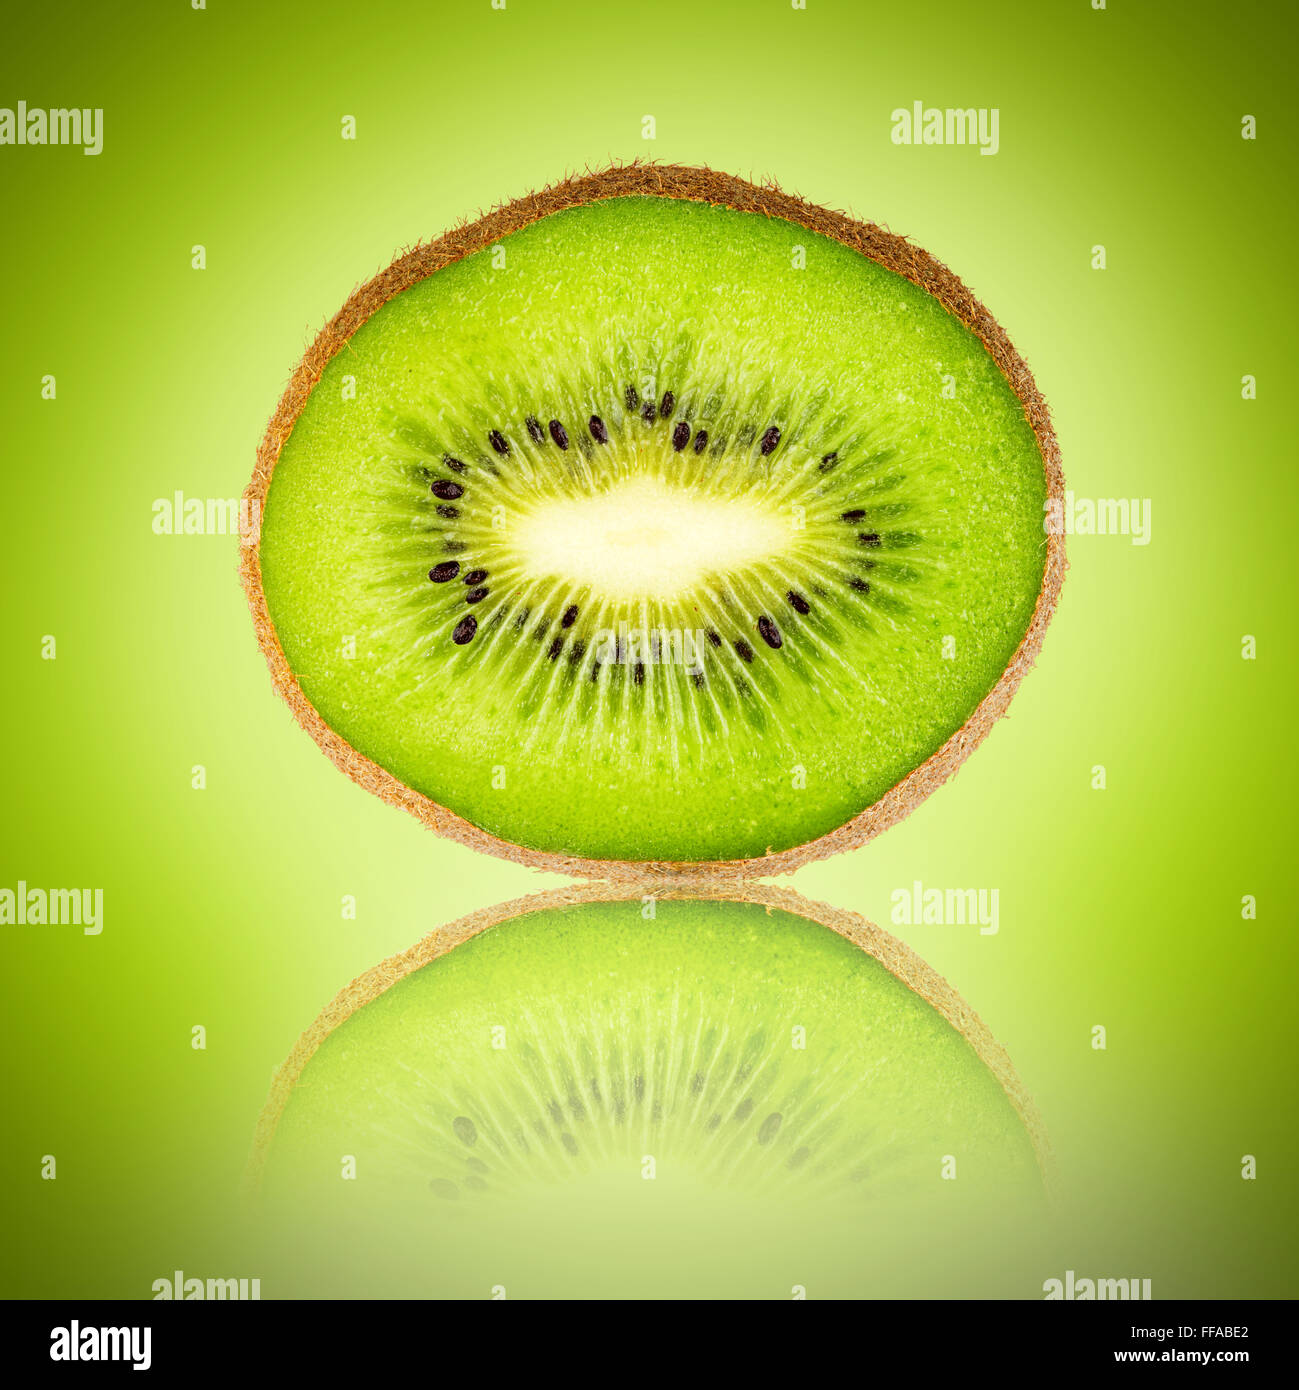 kiwi fruit slice on green background, Stock Photo